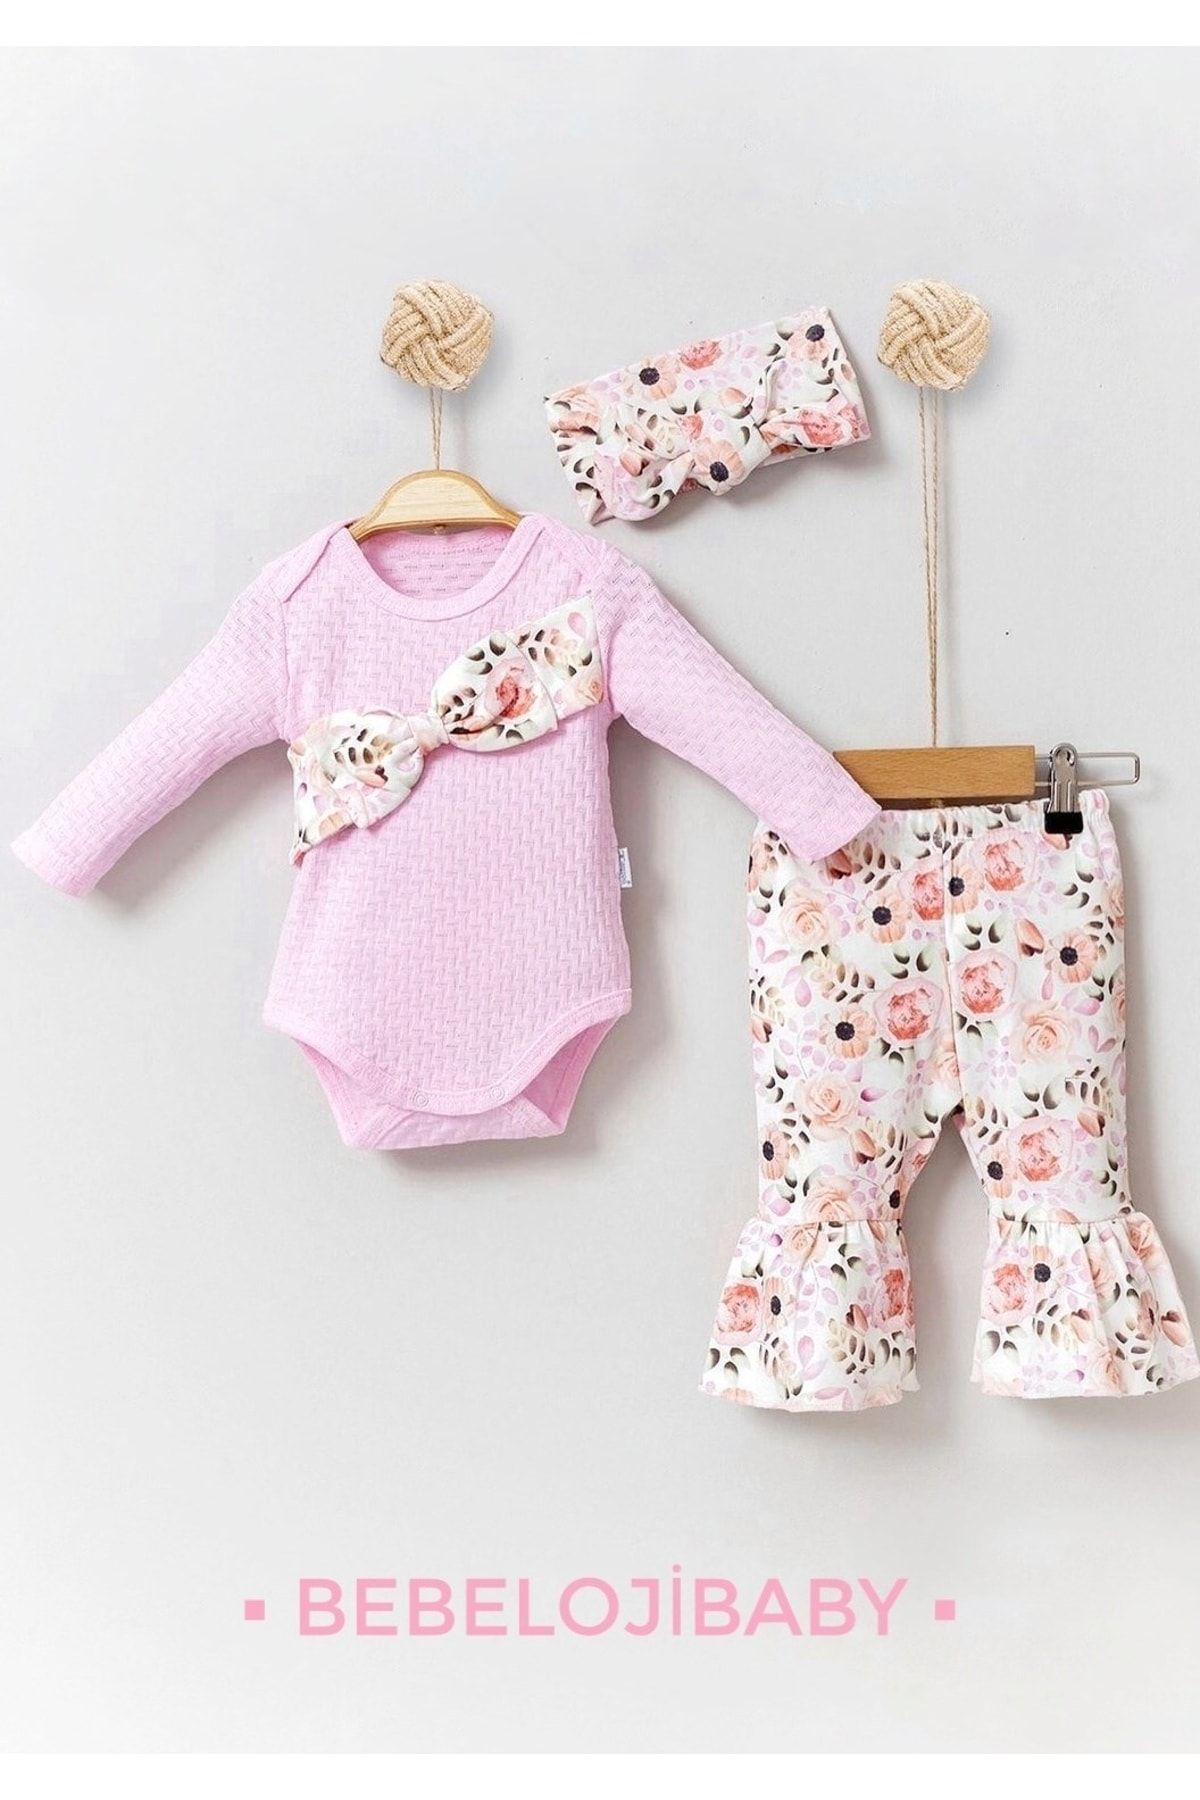 Bebeloji Baby Jakarlı Bahar Çiçekleri Kız Bebek 3'lü Takım Yenidoğan Kıyafeti